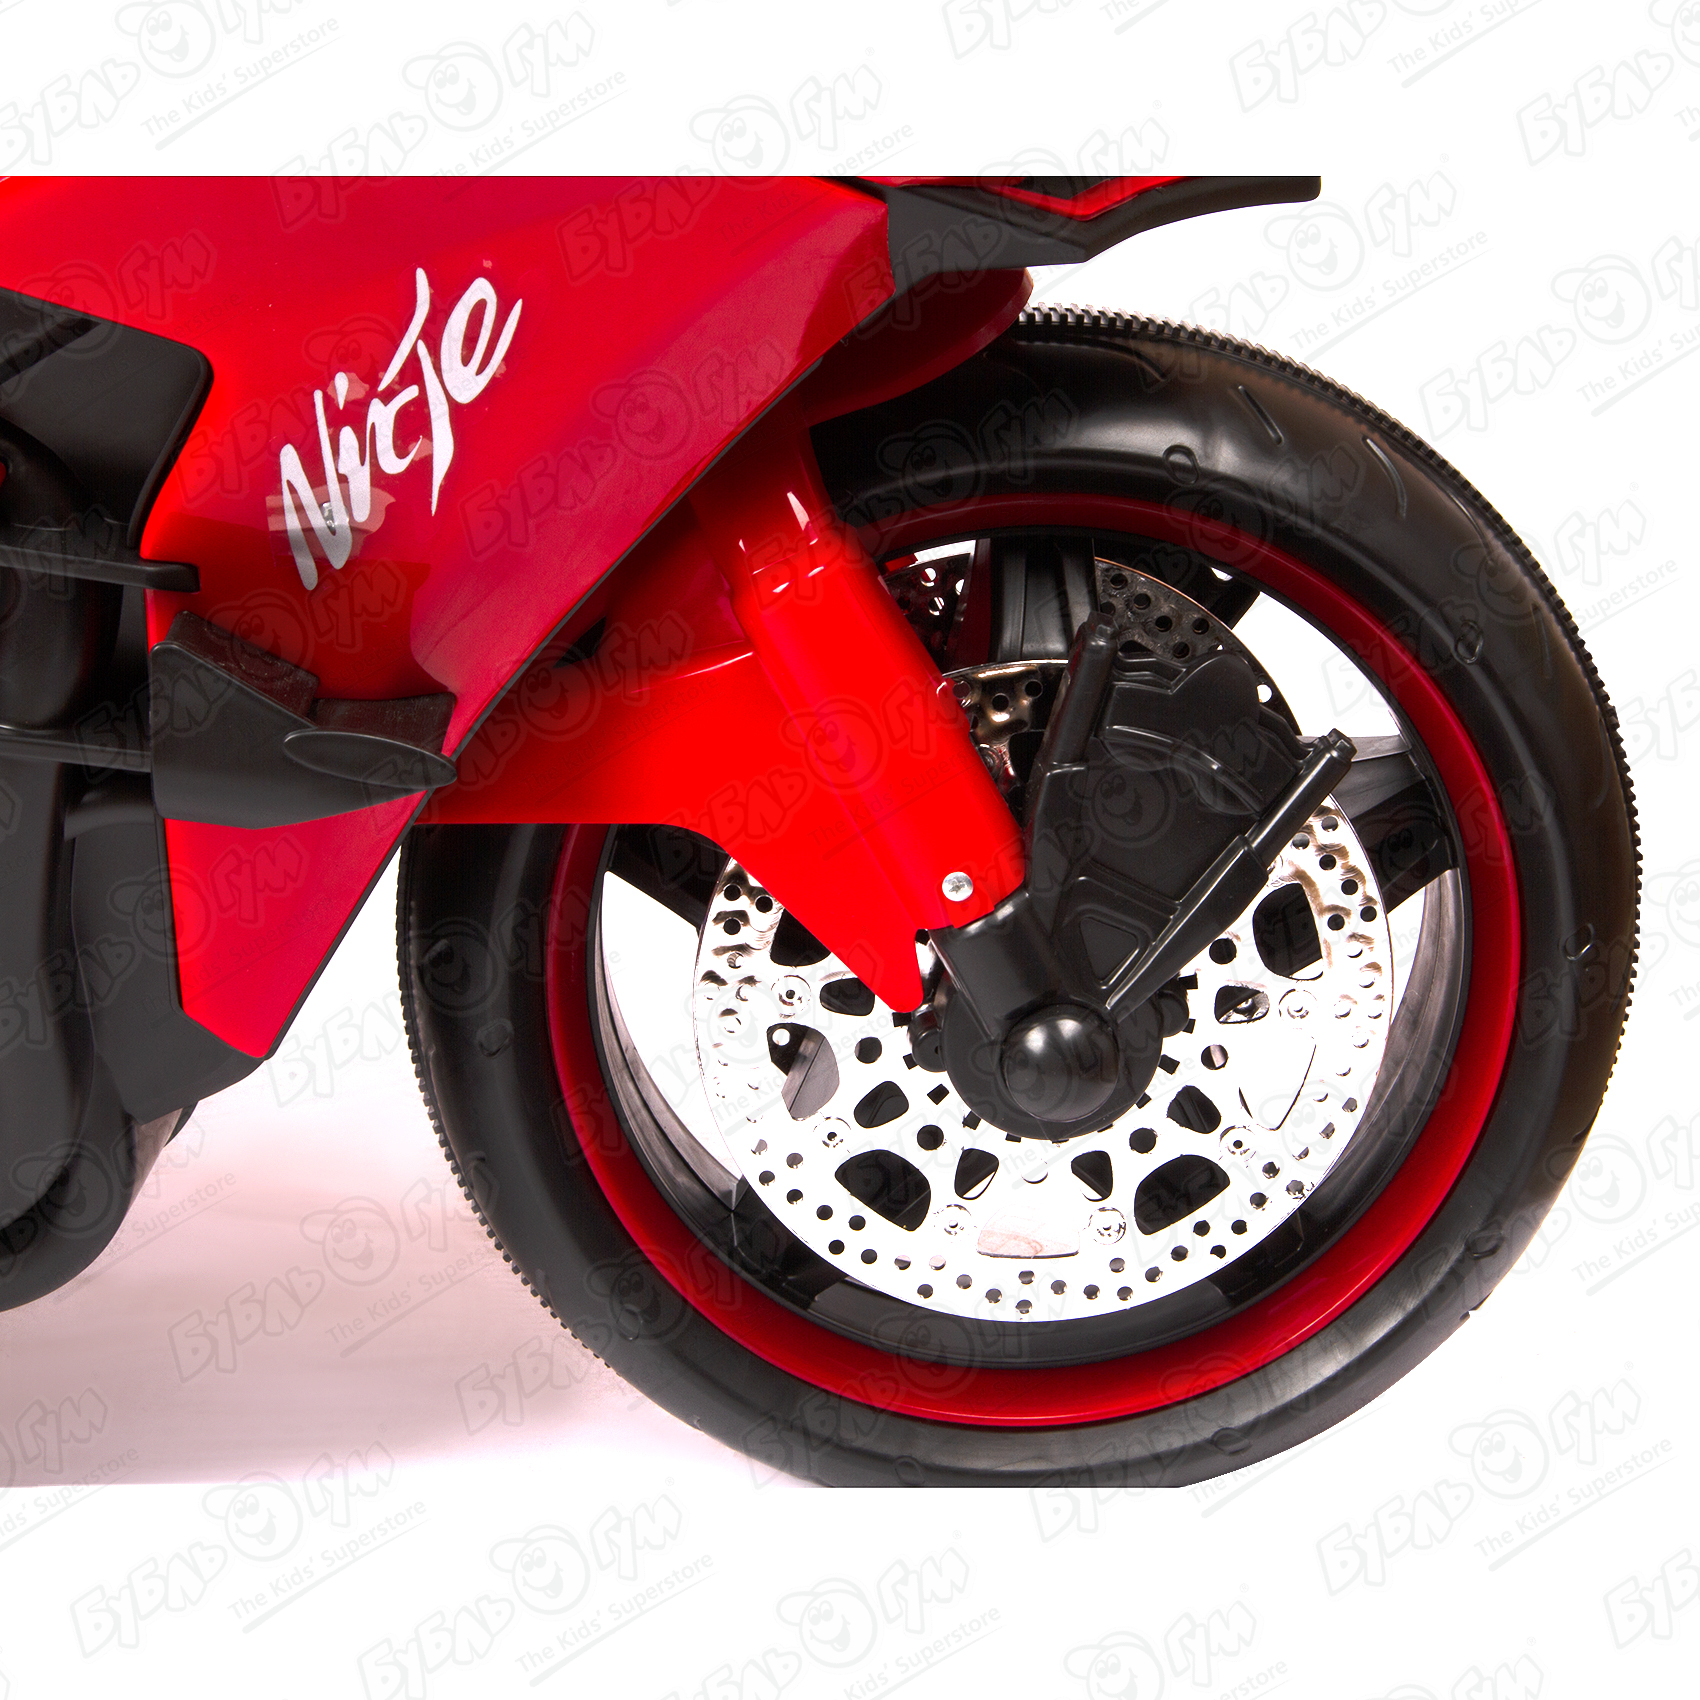 Мотоцикл H2R аккумуляторный черно-красный - фото 15